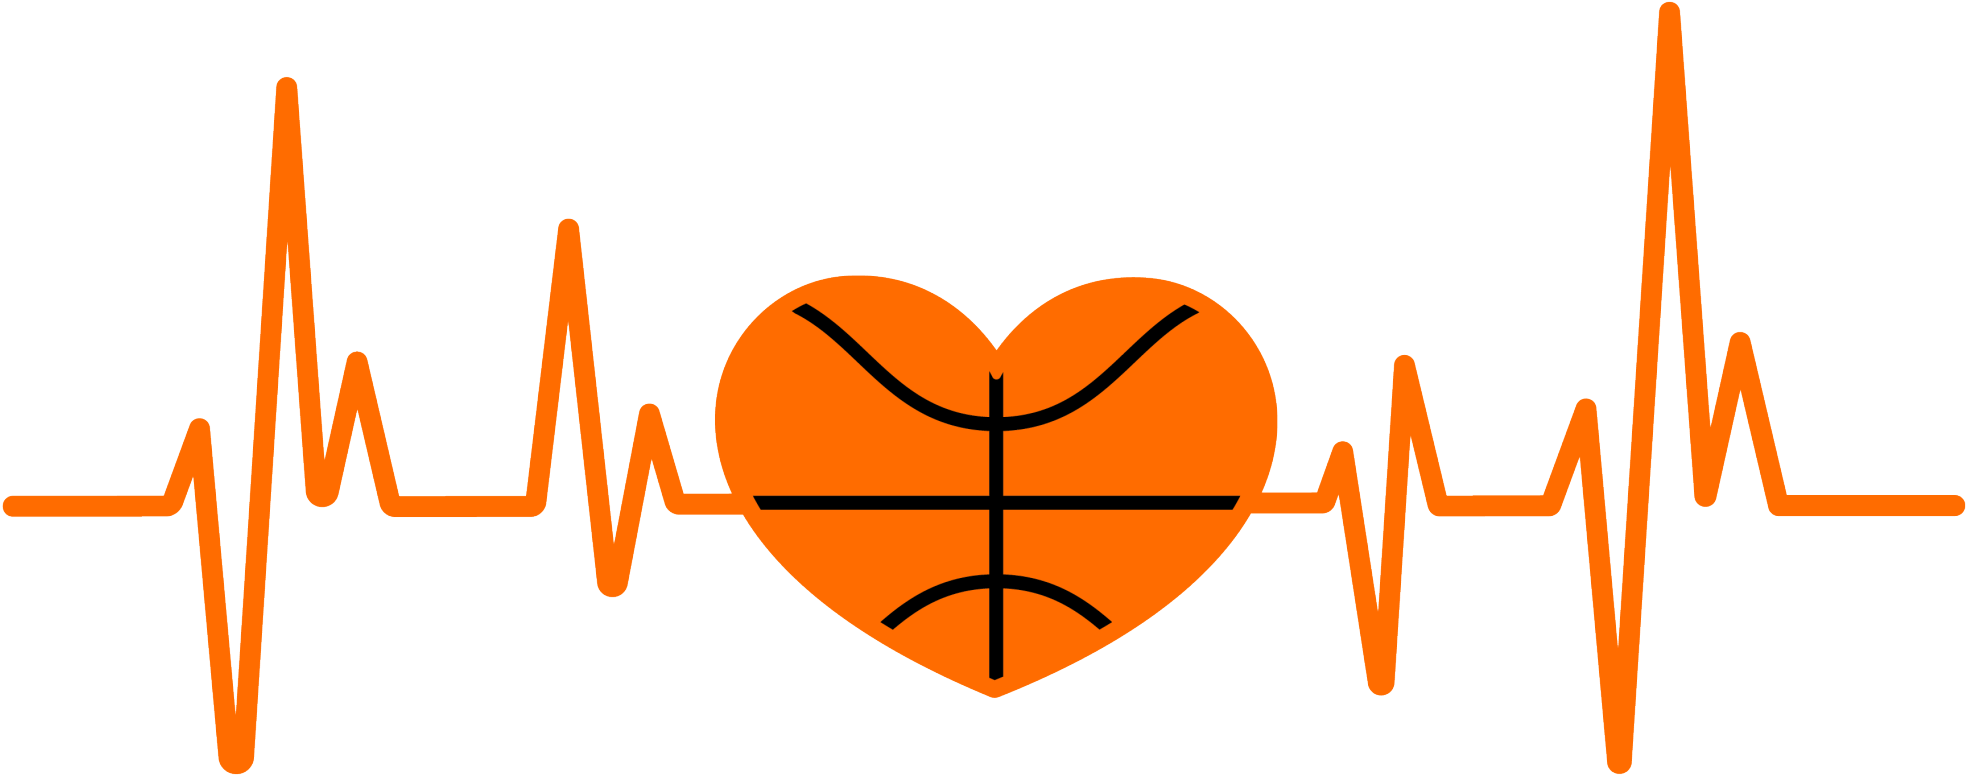 Heartbeat Basketball Heart - Heart Shape Design Shirt Clipart (2048x2048), Png Download